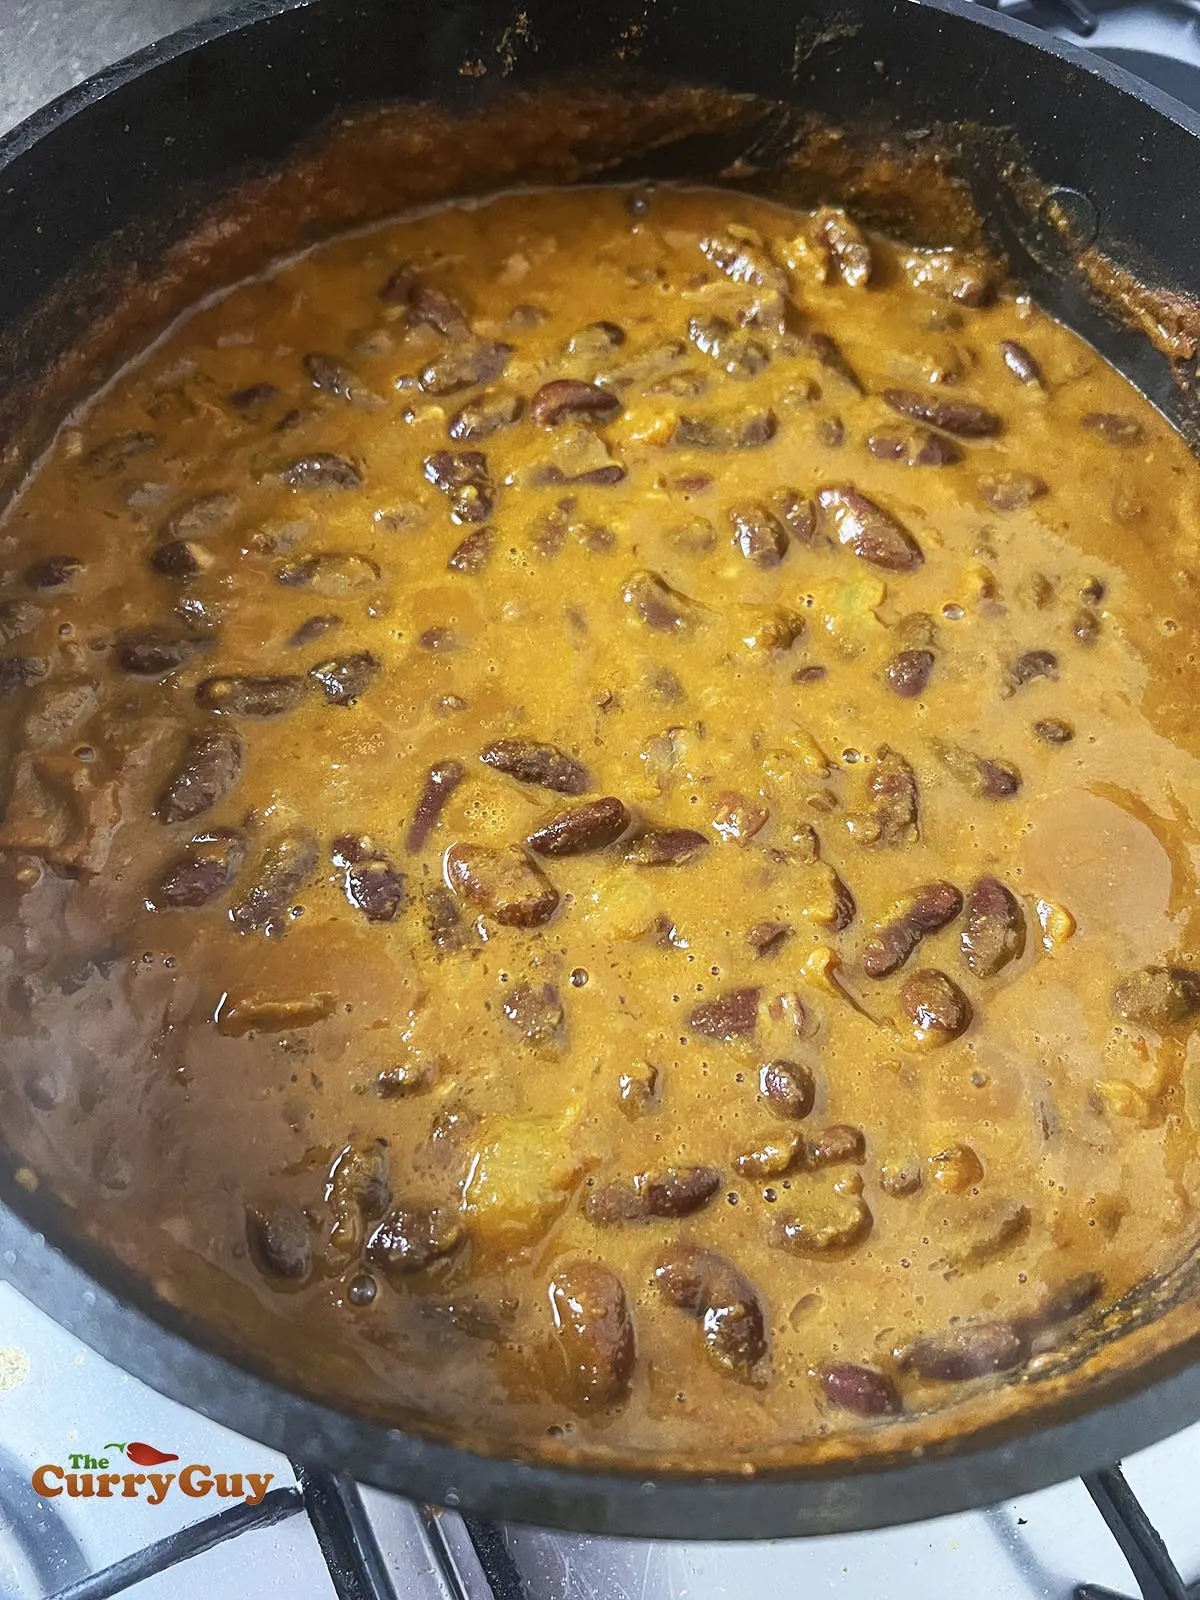 Kidney beans in the blended rajma sauce